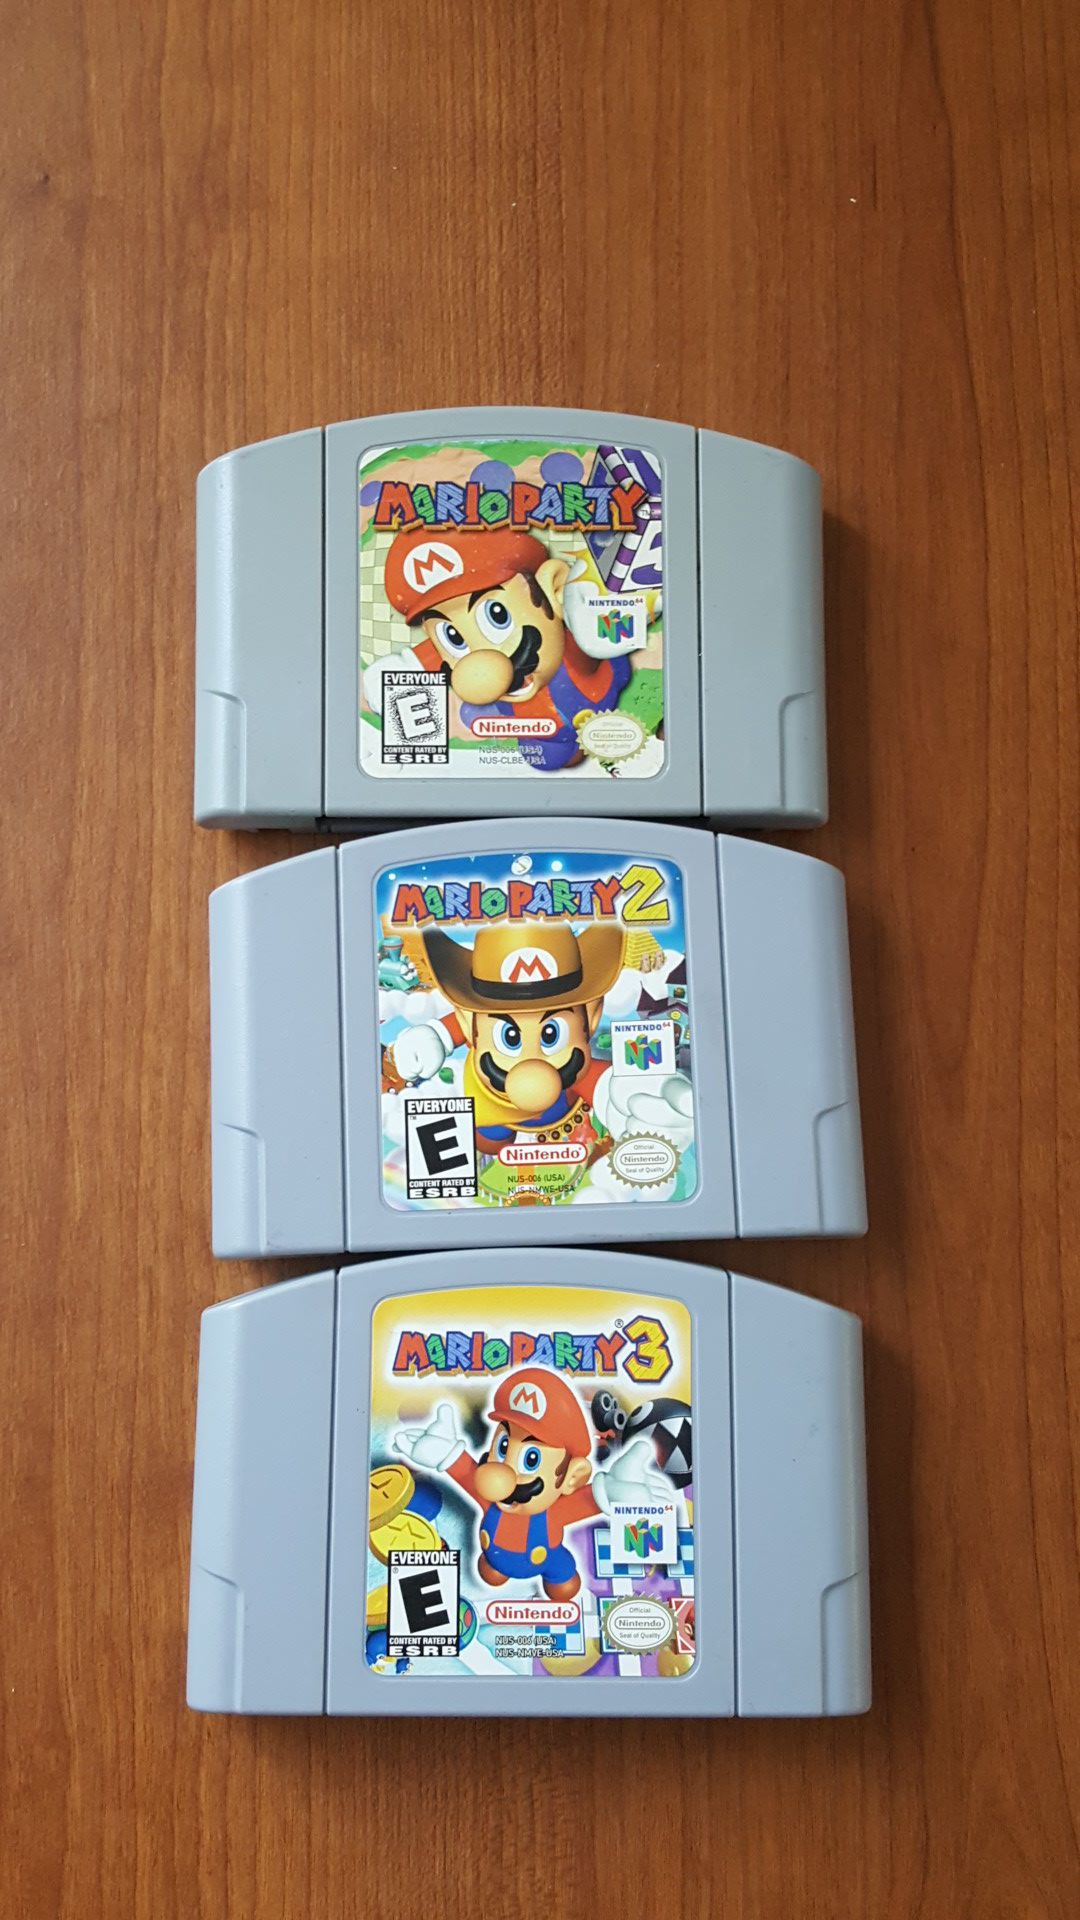 Mario party 1, 2, 3 fot n64 nintemdo 64